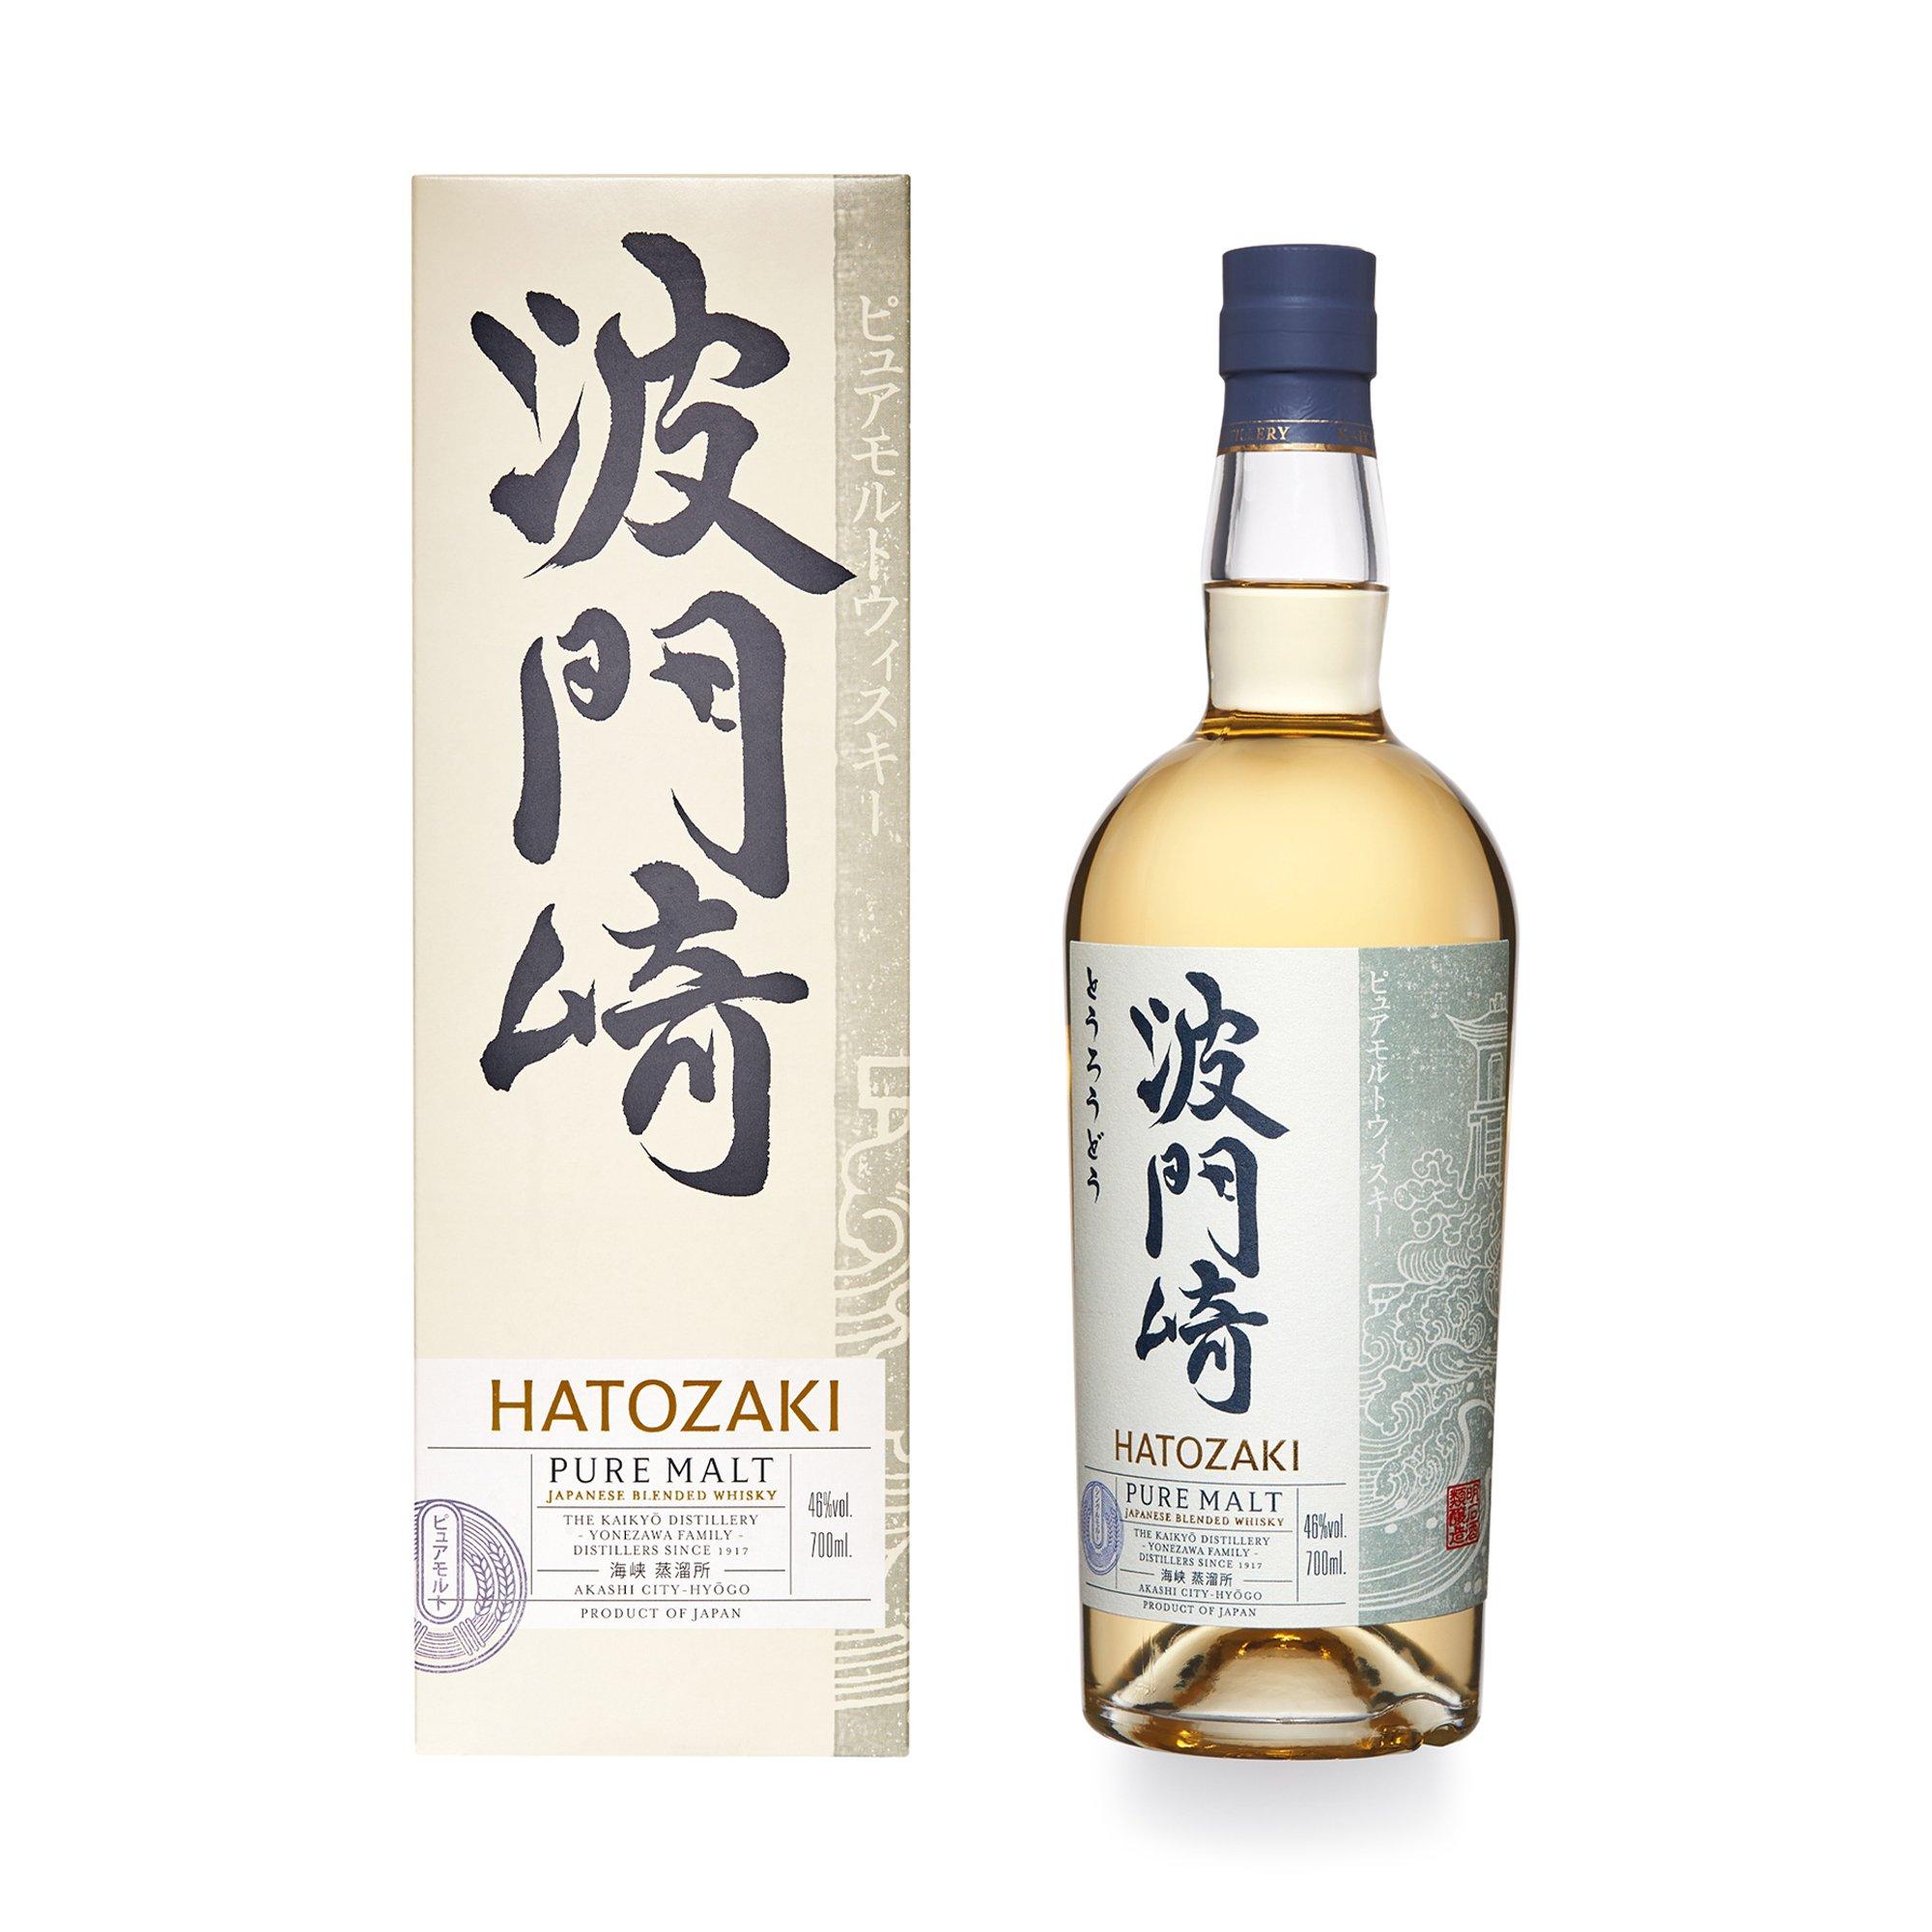 Image of Hatozaki Pure Malt Japanese Whisky - 70 cl